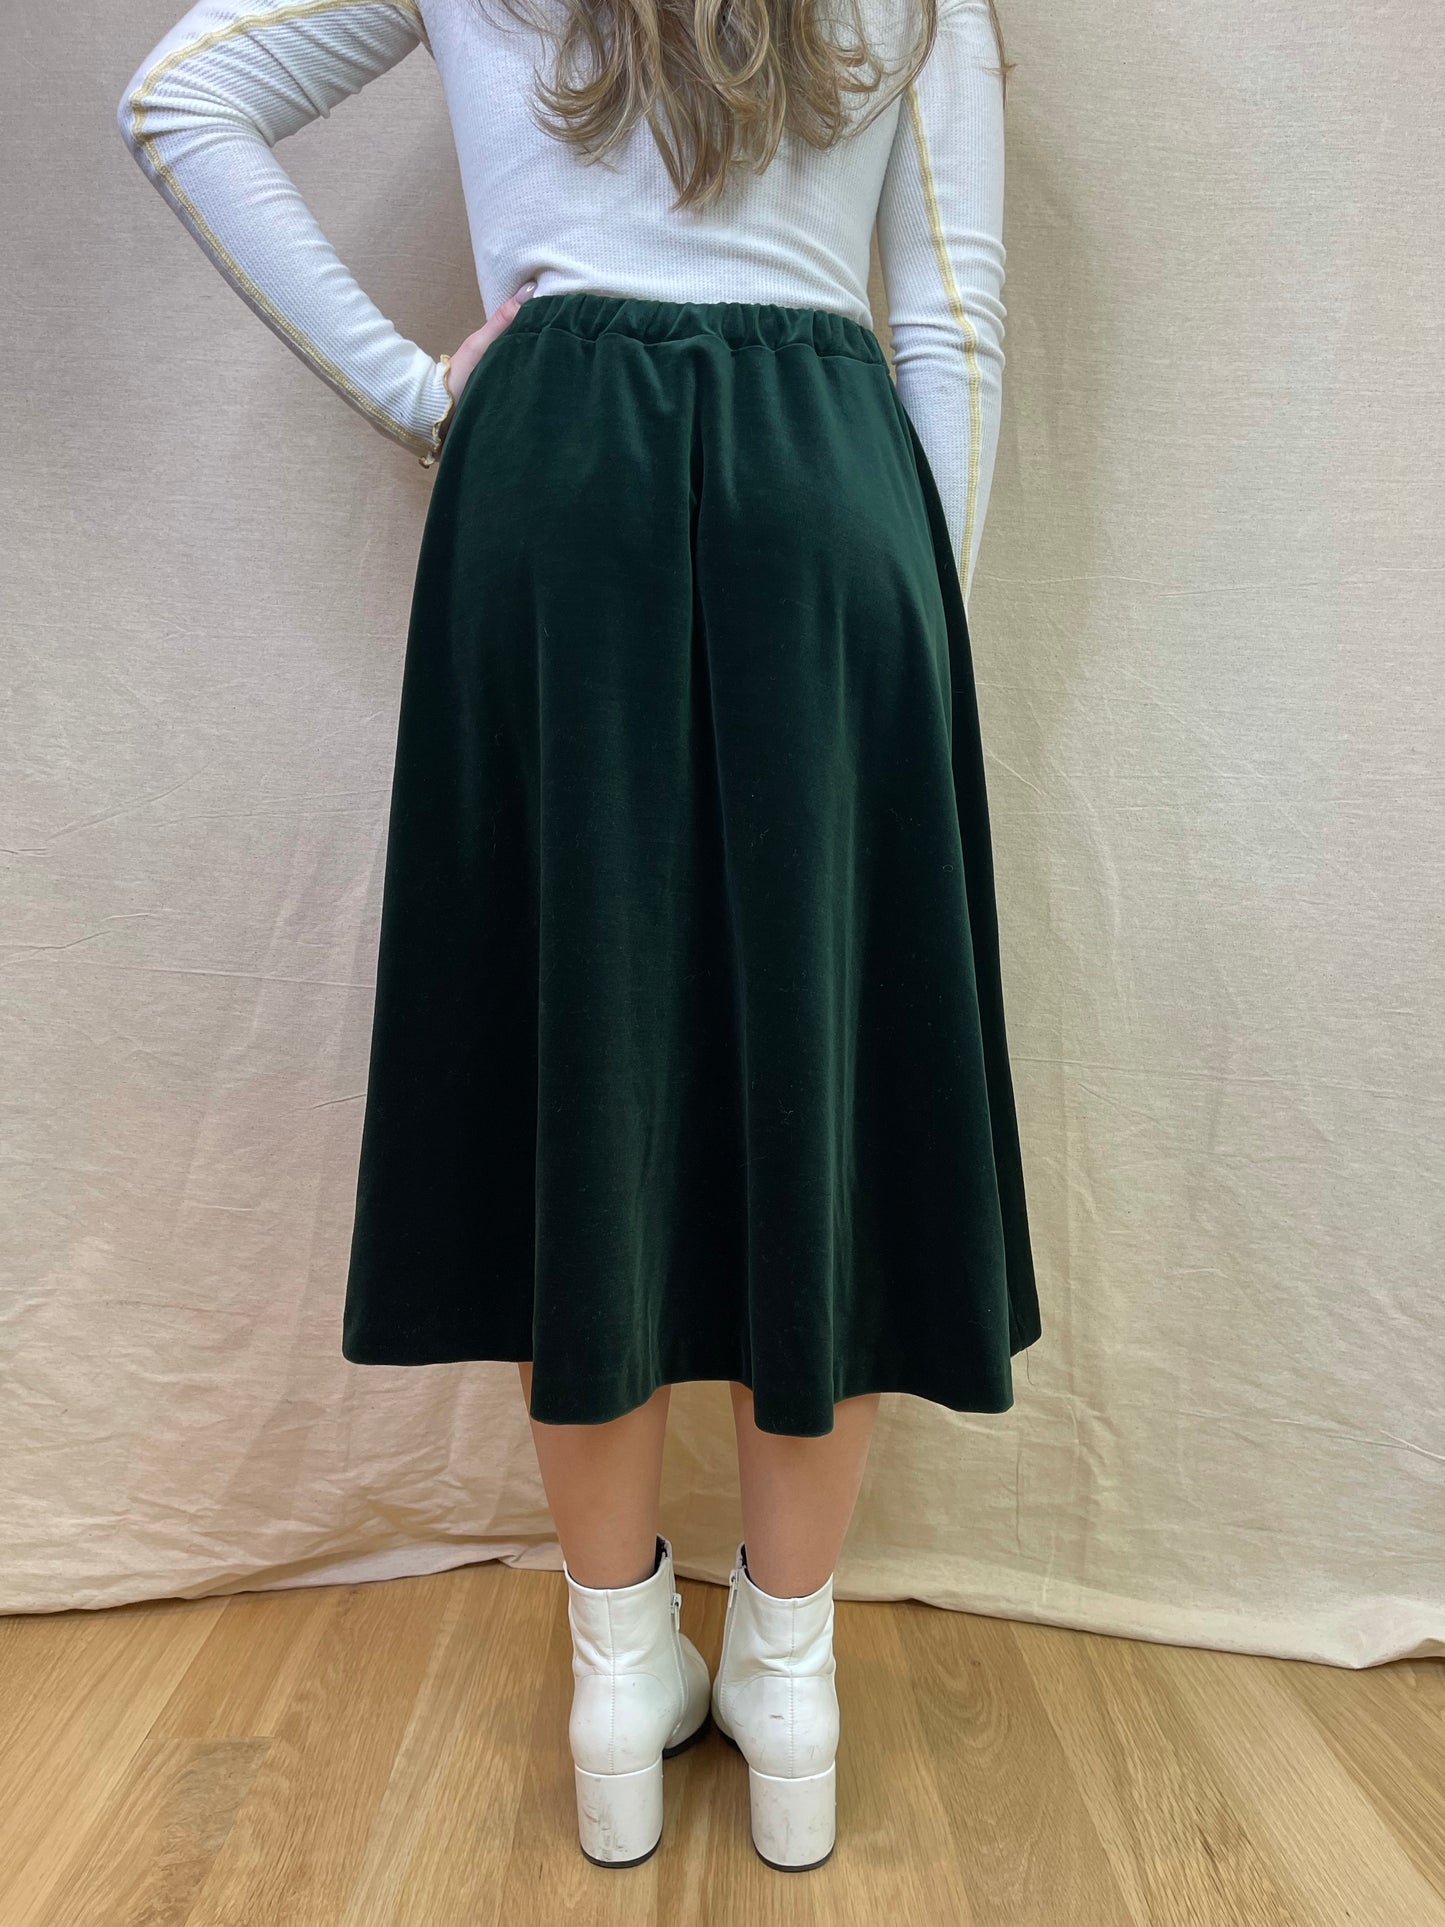 The Bonnie Skirt, 1980's